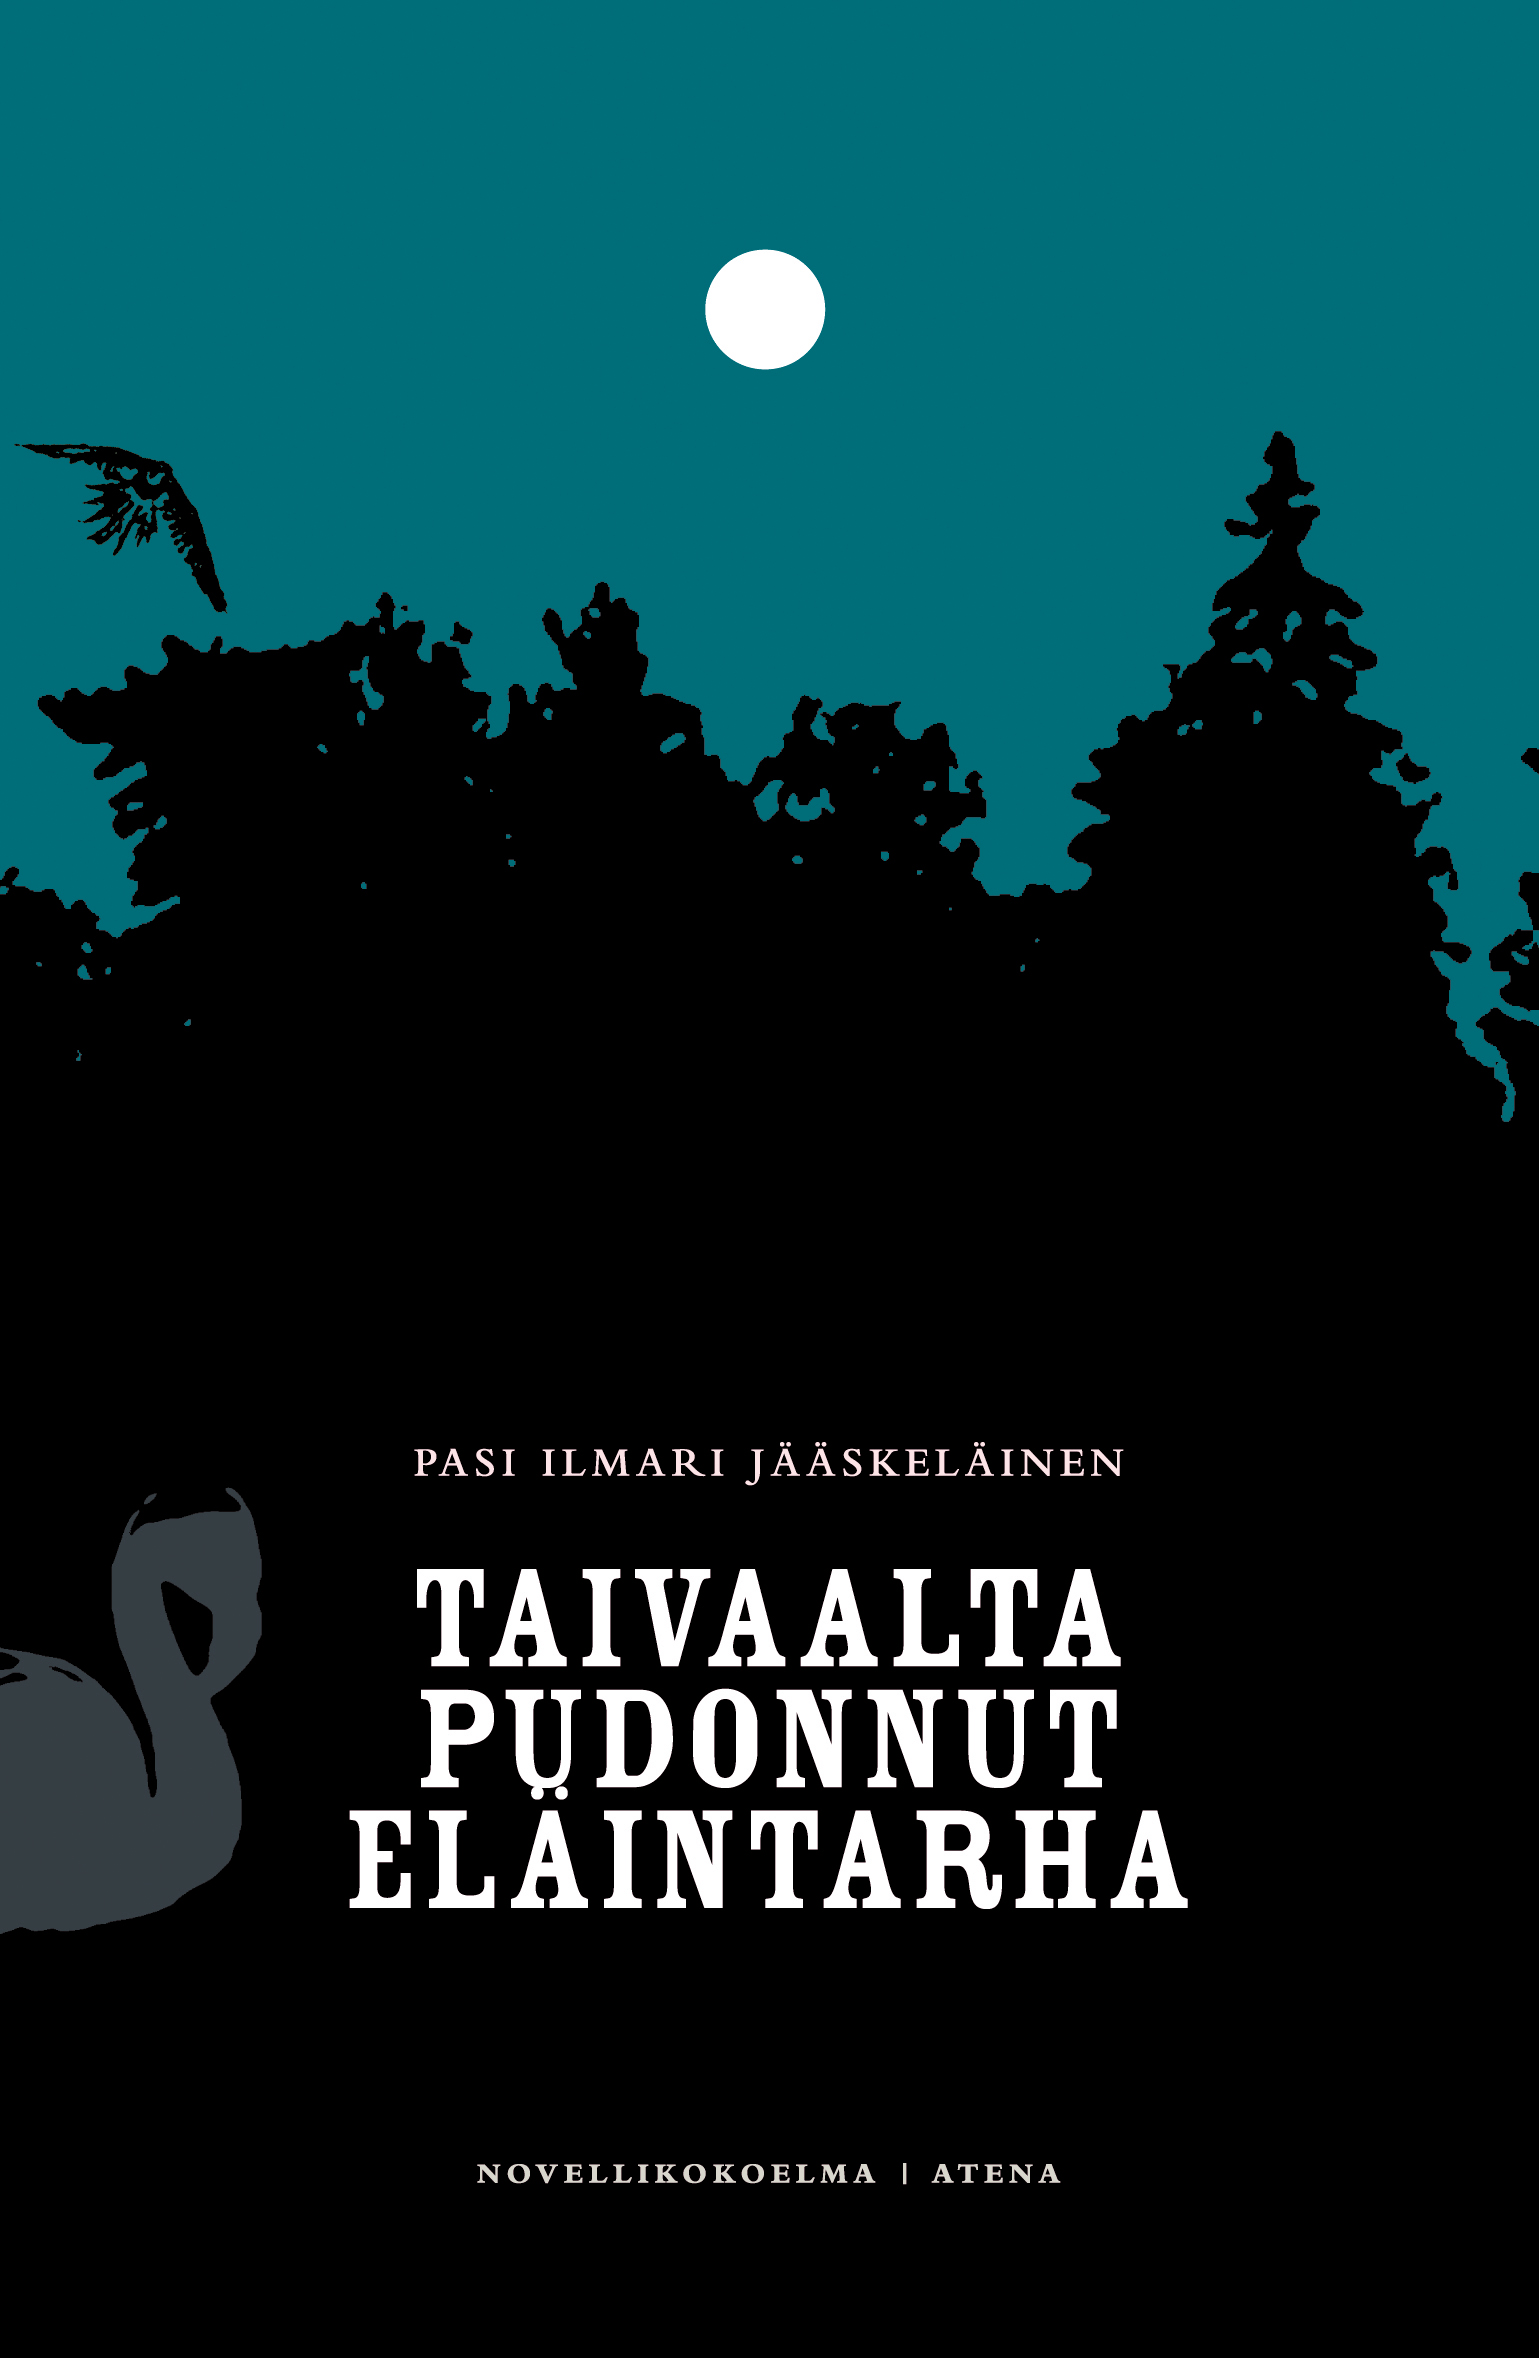 Pasi Ilmari Jääskeläinen: Taivaalta pudonnut eläintarha (Finnish language, 2008, Atena Kustannus Oy)